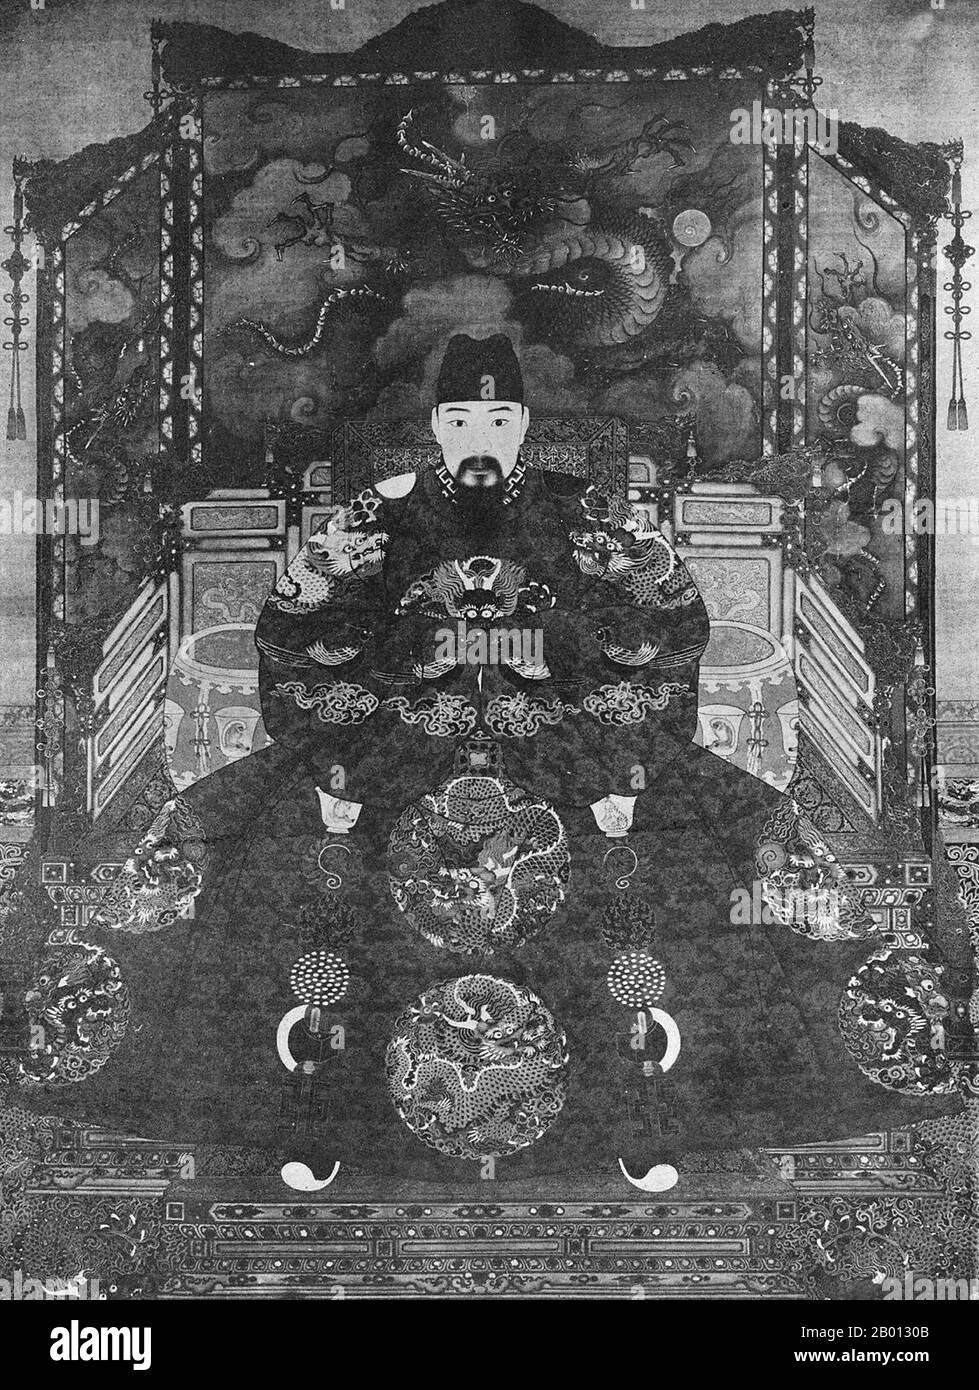 China: Kaiser Hongzhi (30. Juli 1470 - 9. Juni 1505), 10. Herrscher der Ming-Dynastie (r. 1487-1505). Hängende Schriftrolle, 15.-17. Jahrhundert. Der Hongzhi-Kaiser (1470-1505), der persönliche Name Zhu Youcheng und der Tempelname Xiaozong, war der 10. Kaiser der Ming-Dynastie. Als Sohn des Chenghua-Imperators wird seine Herrschaft als Kaiser das Silberzeitalter Hongzhi genannt. Sein Zeitname bedeutet „große Regierung“. Er war ein weiser und friedliebender Herrscher, der als einer der größten Ming-Kaiser galt. Hongzhi nahm nur eine Kaiserin und hatte keine Konkubine. Er bleibt der einzige monogame Kaiser in der chinesischen Geschichte. Stockfoto